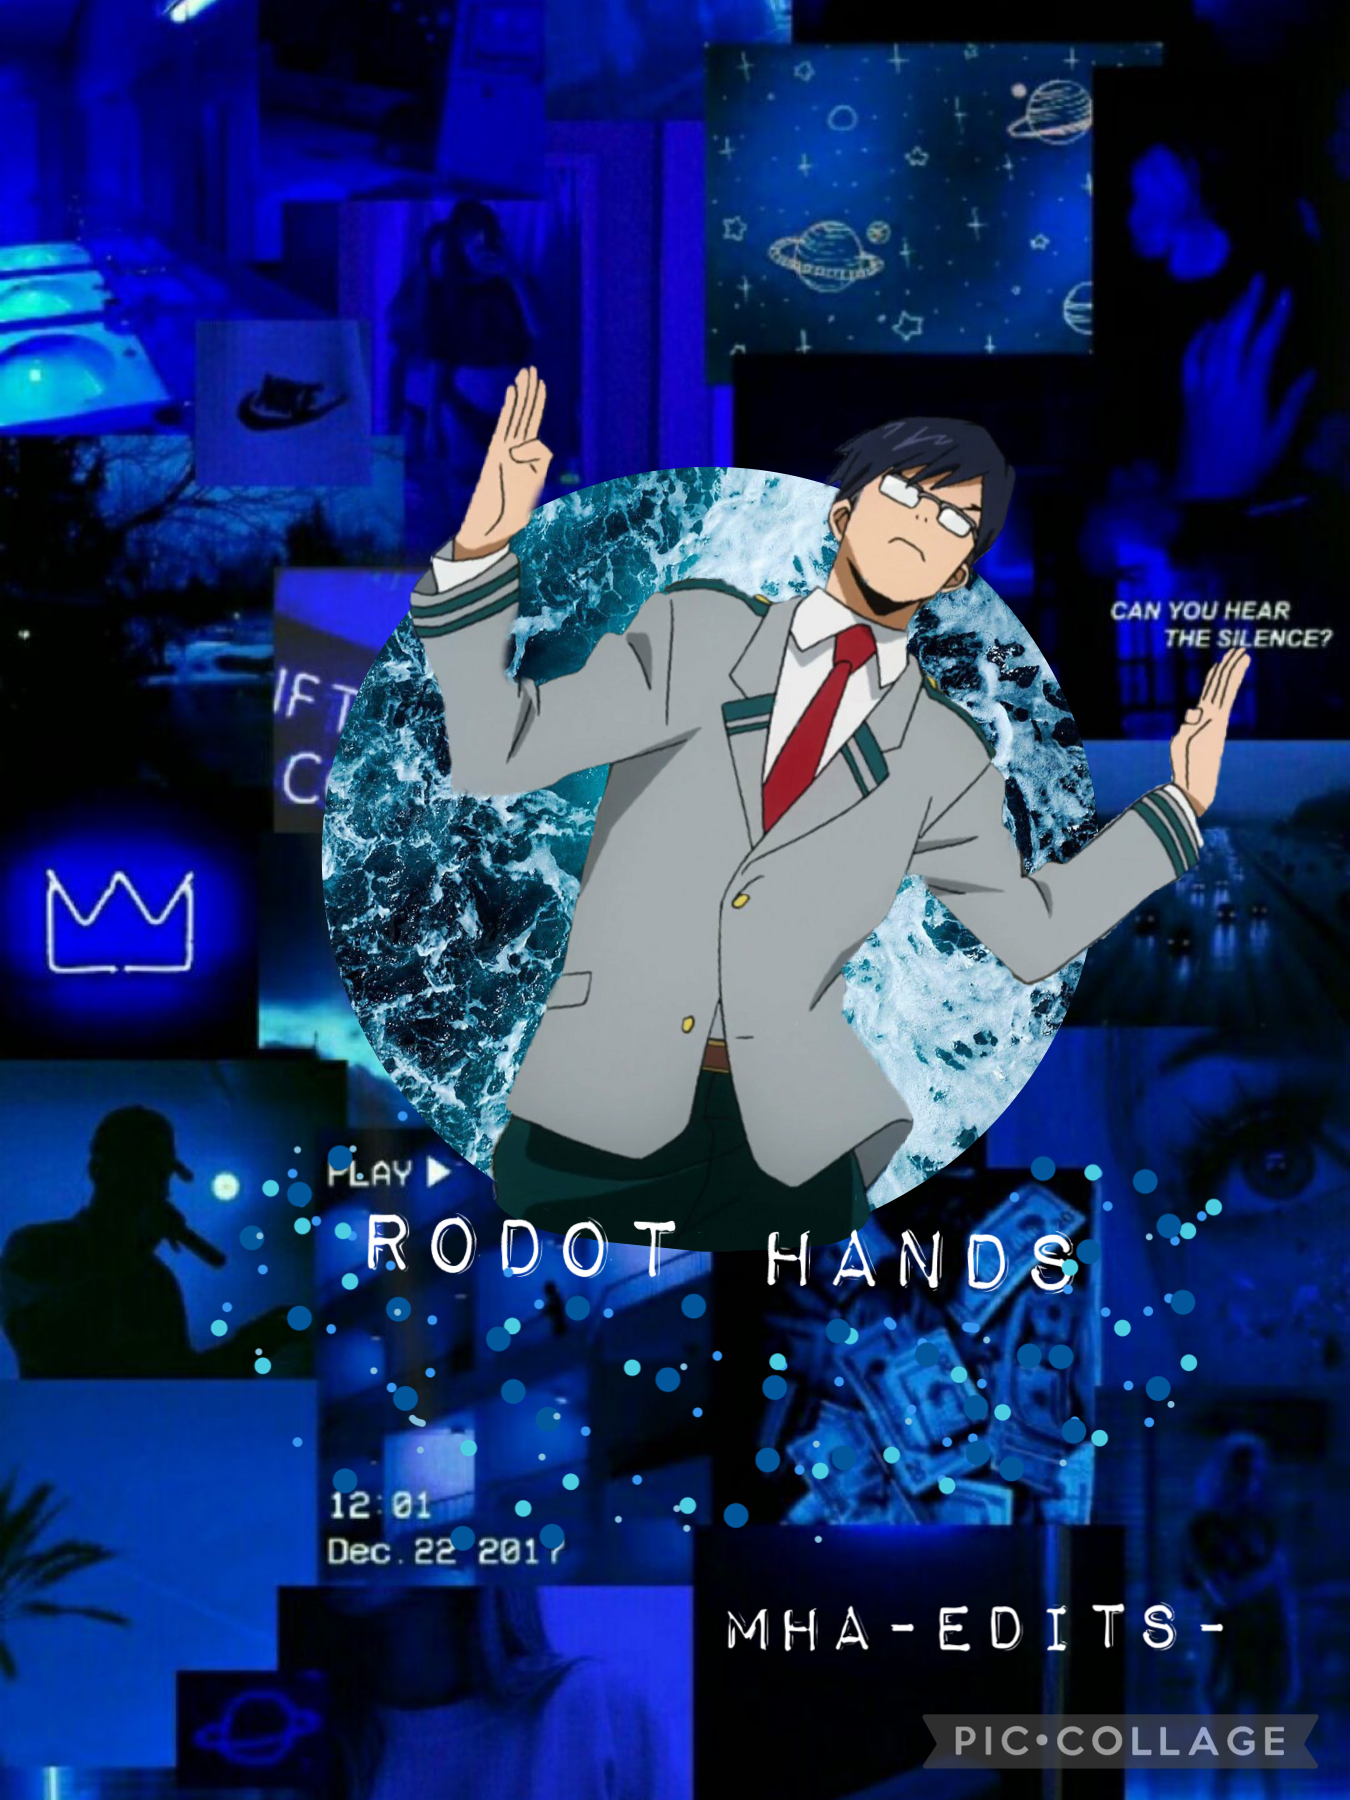 🤍tap🤍

Tina ida 💙🙉🙊🙈
Robot hands only when running 
#nerd